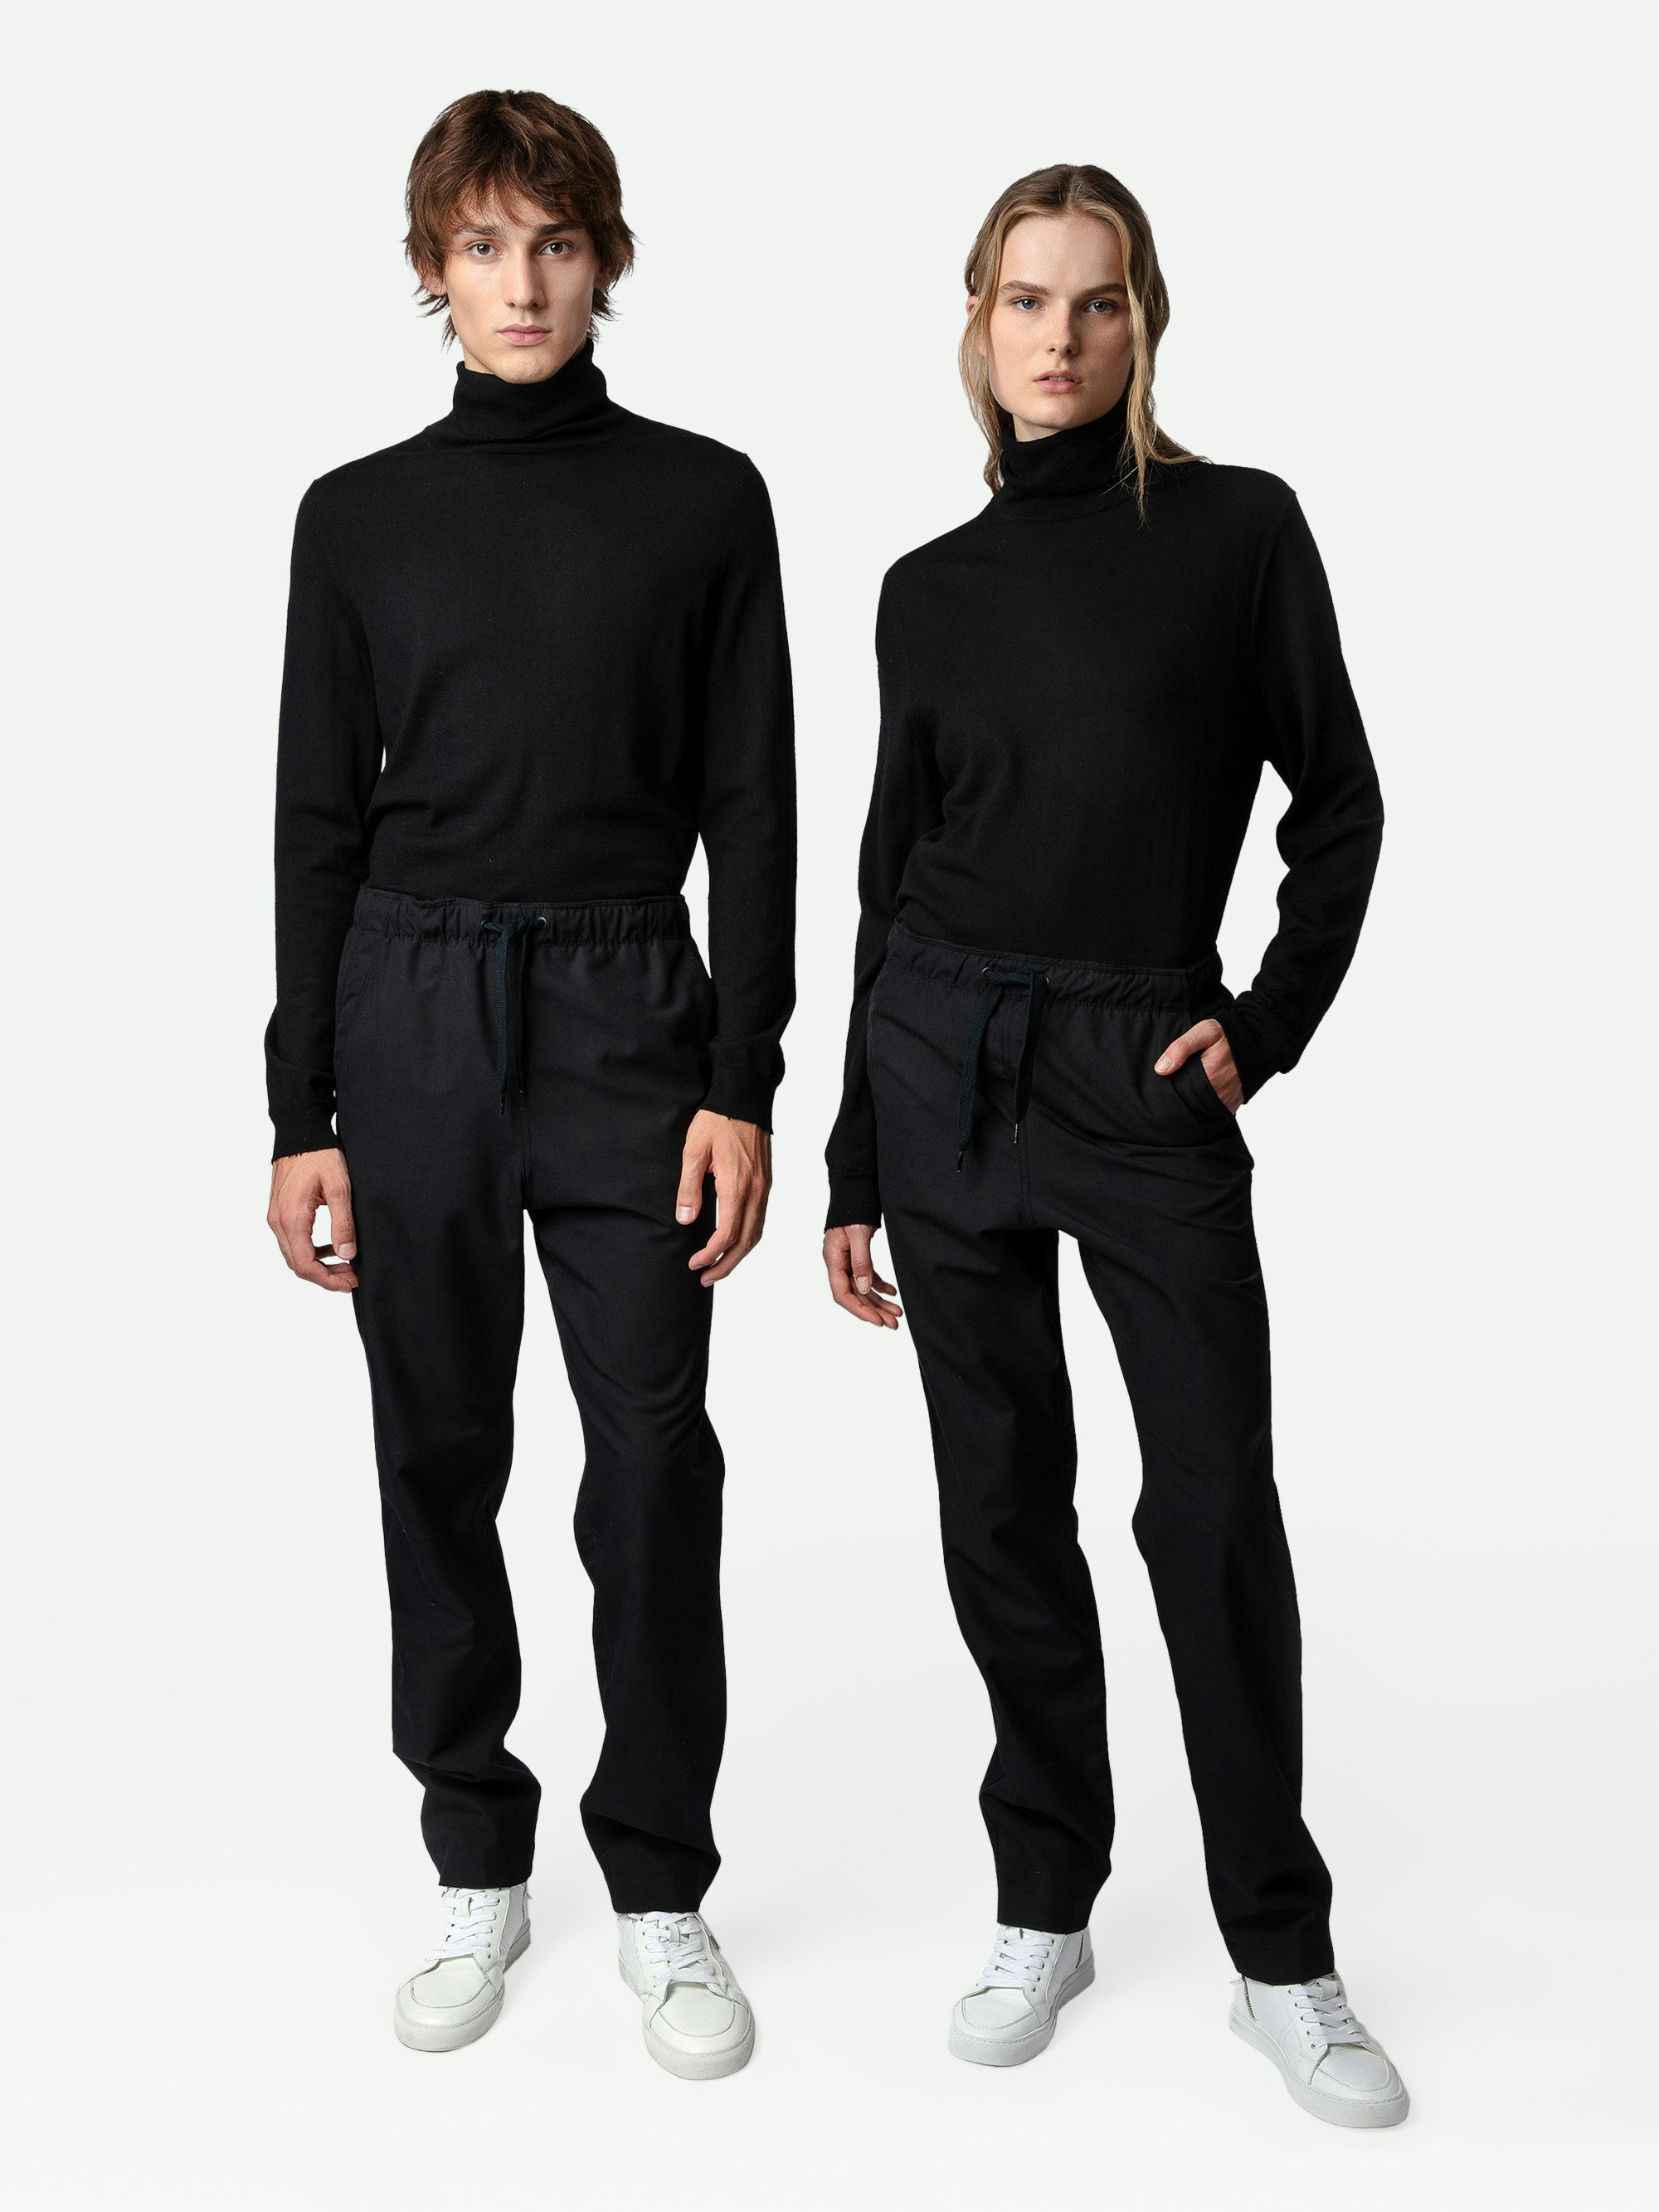 Pantaloni Pixel - Pantaloni unisex in lana nera decorati con uno stemma Studio sul retro.